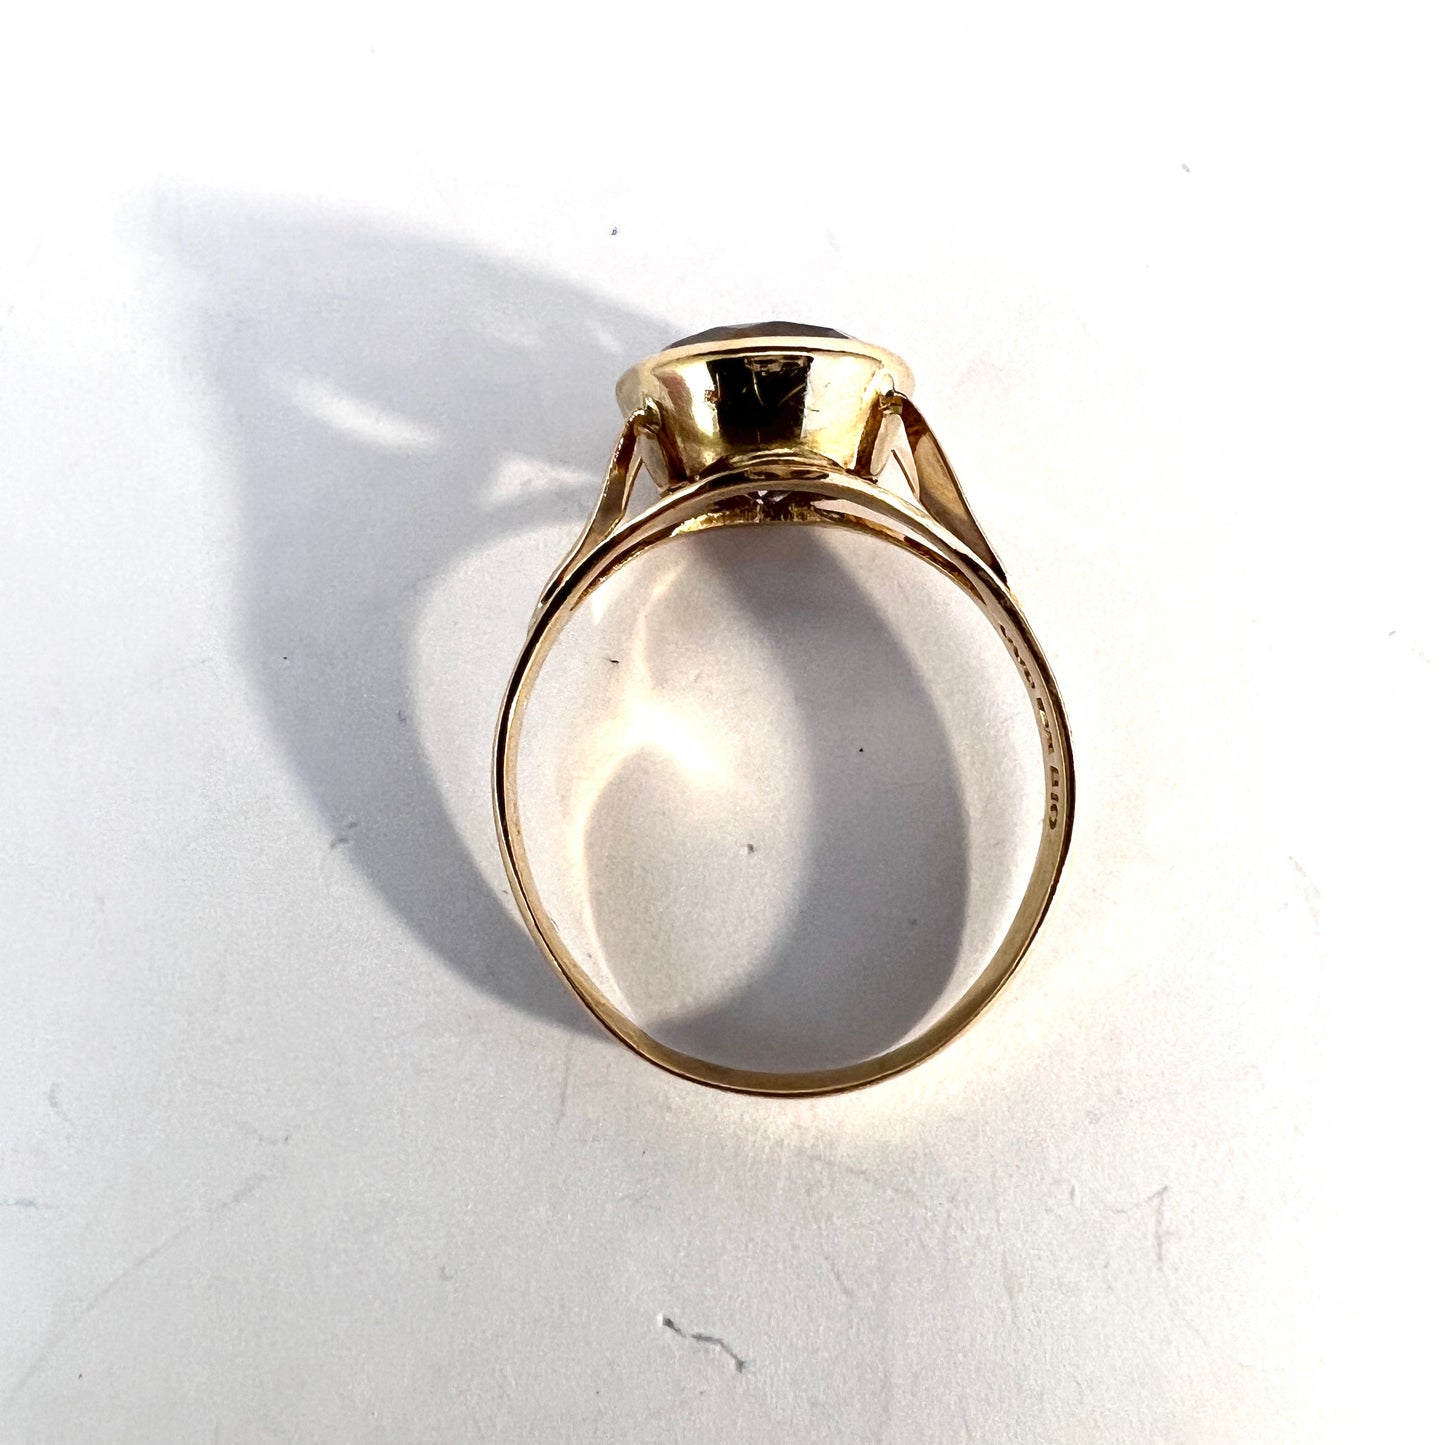 Örneus, Sweden 1976. Vintage 18k Gold Pale Amethyst Ring.